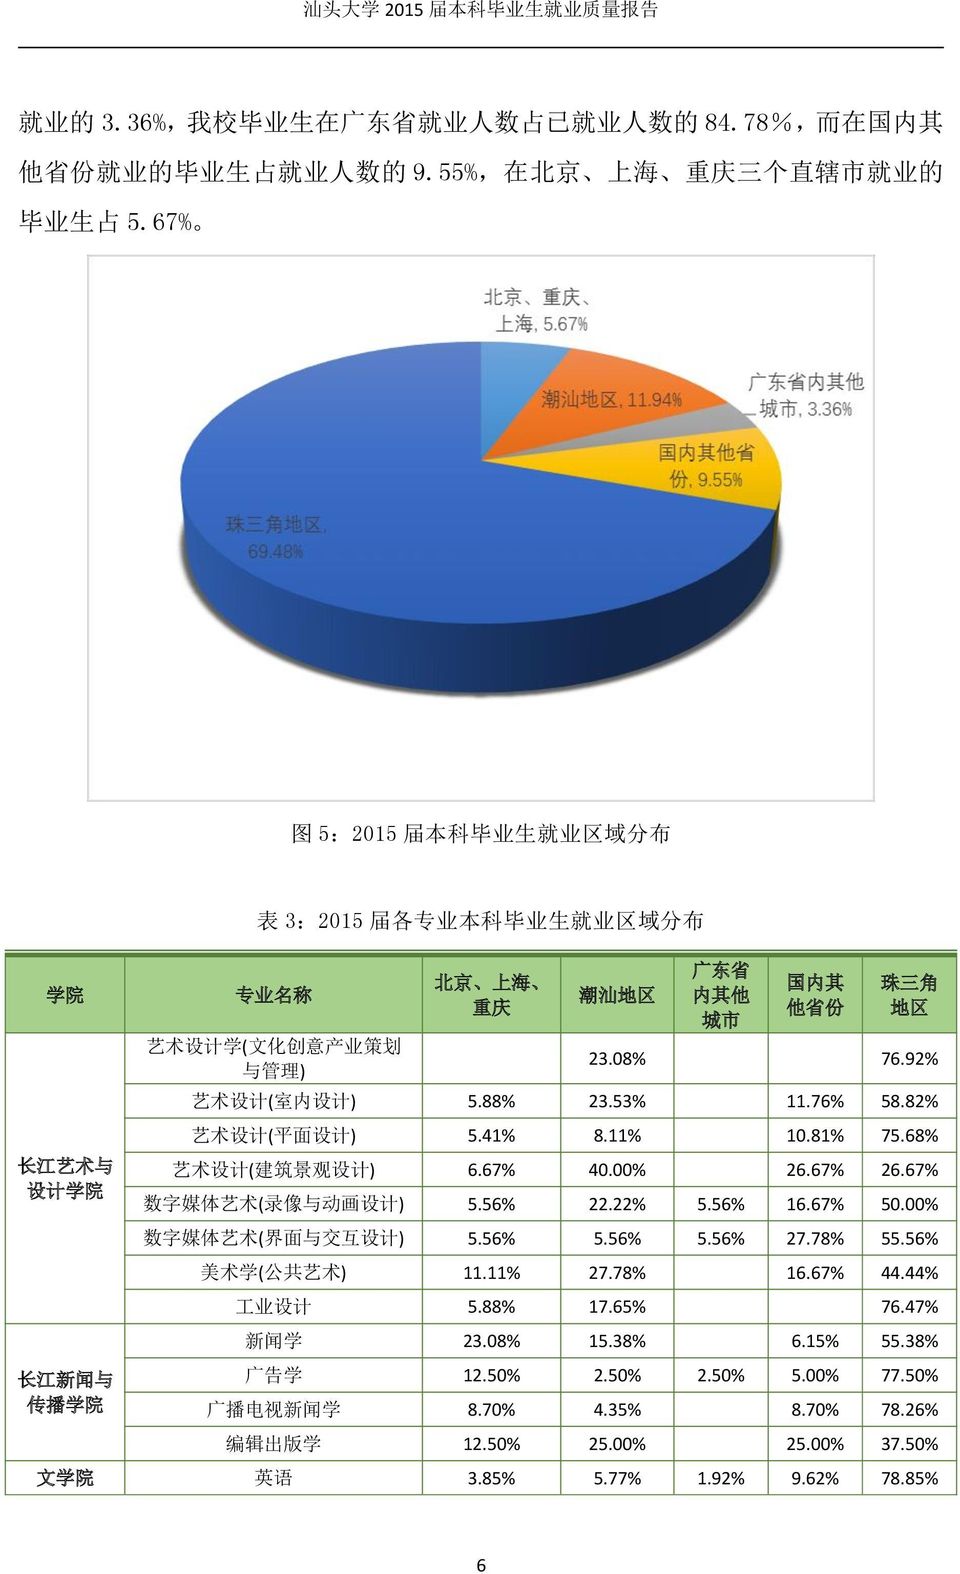 其 他 省 份 珠 三 角 地 区 23.08% 76.92% 艺 术 设 计 ( 室 内 设 计 ) 5.88% 23.53% 11.76% 58.82% 艺 术 设 计 ( 平 面 设 计 ) 5.41% 8.11% 10.81% 75.68% 艺 术 设 计 ( 建 筑 景 观 设 计 ) 6.67% 40.00% 26.67% 26.